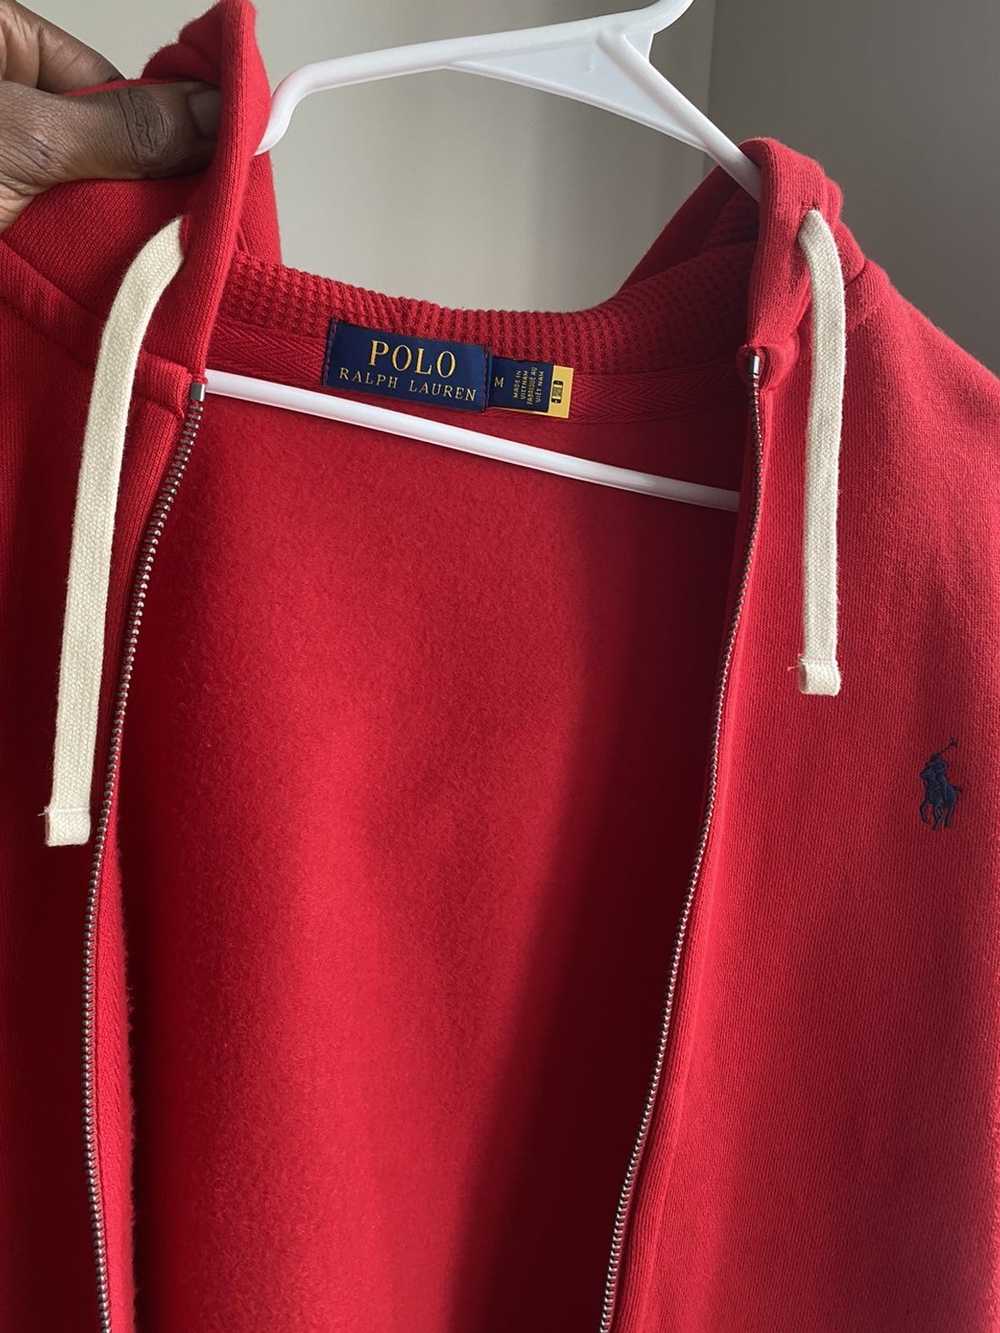 Polo Ralph Lauren Zip jacket polo Ralph Lauren - image 2